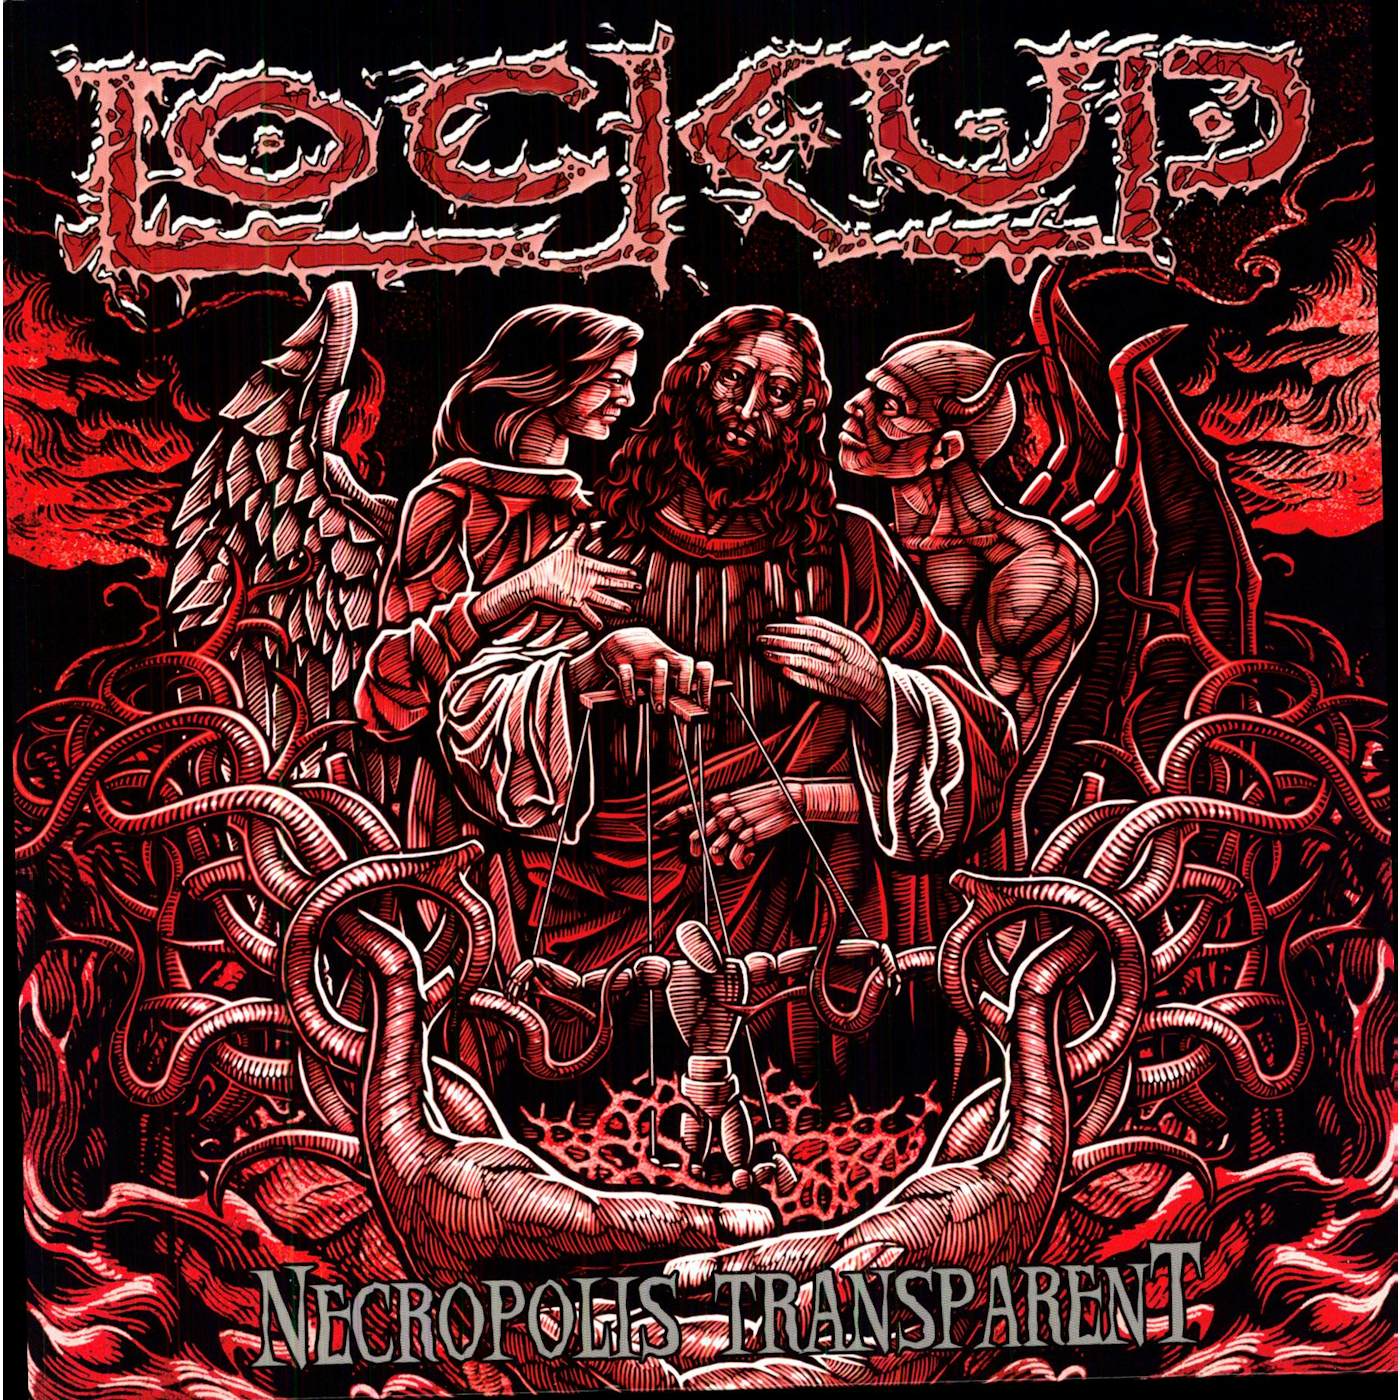 Lock Up Necropolis Transparent Vinyl Record